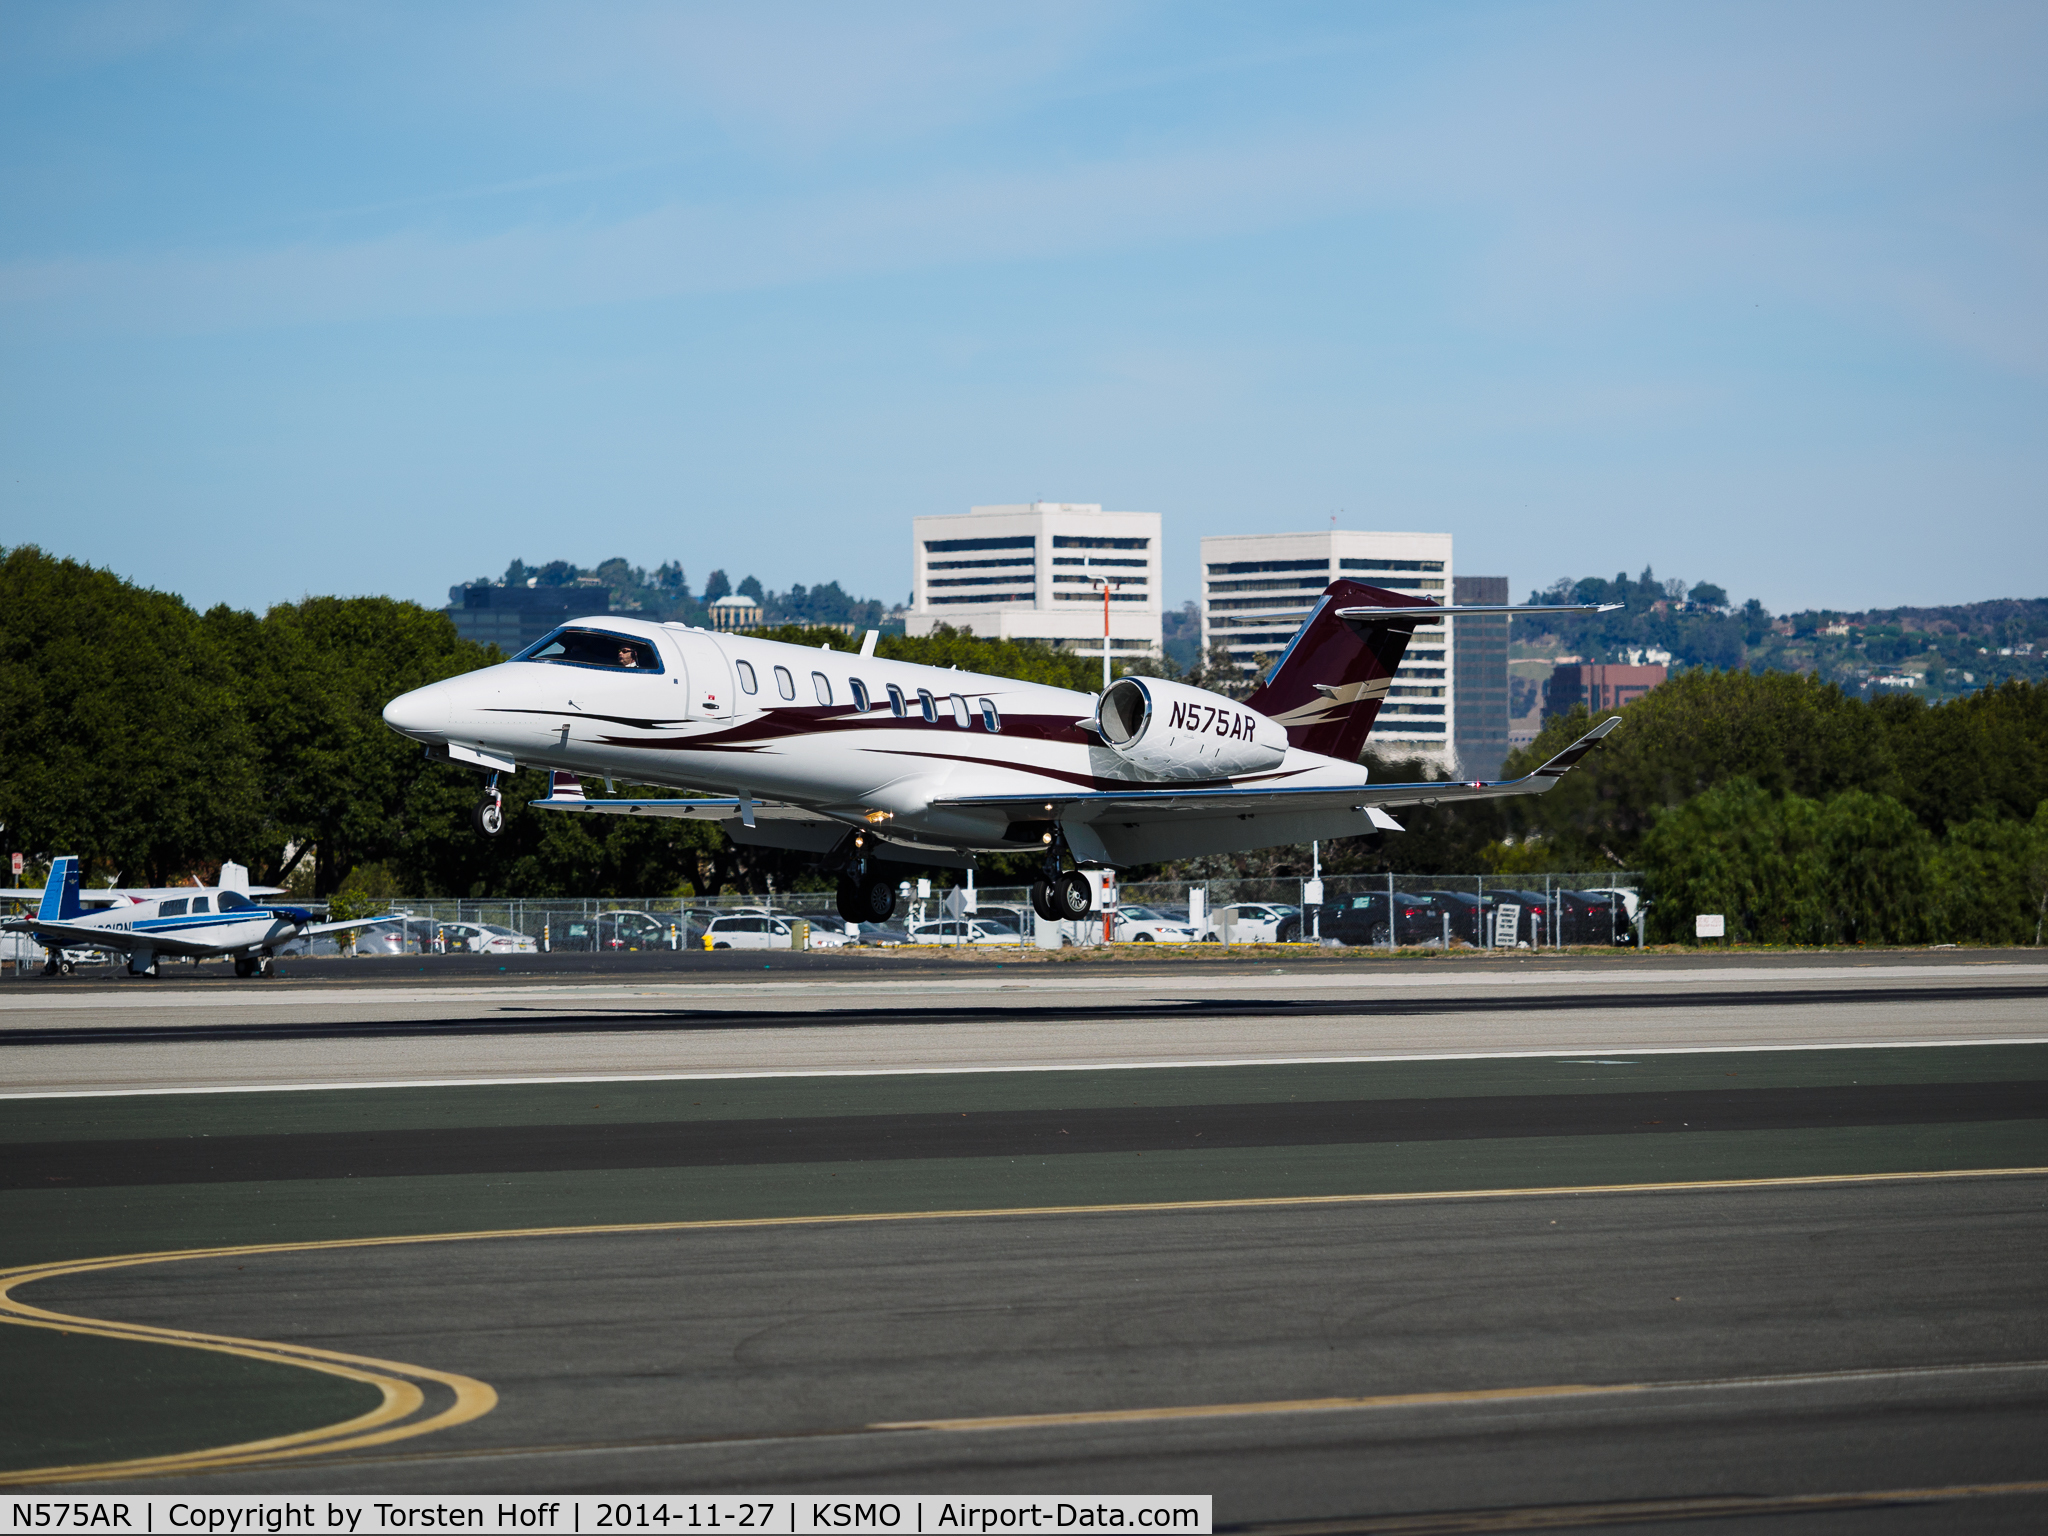 N575AR, 2013 Learjet 45 C/N 458, N575AR arriving on RWY 21